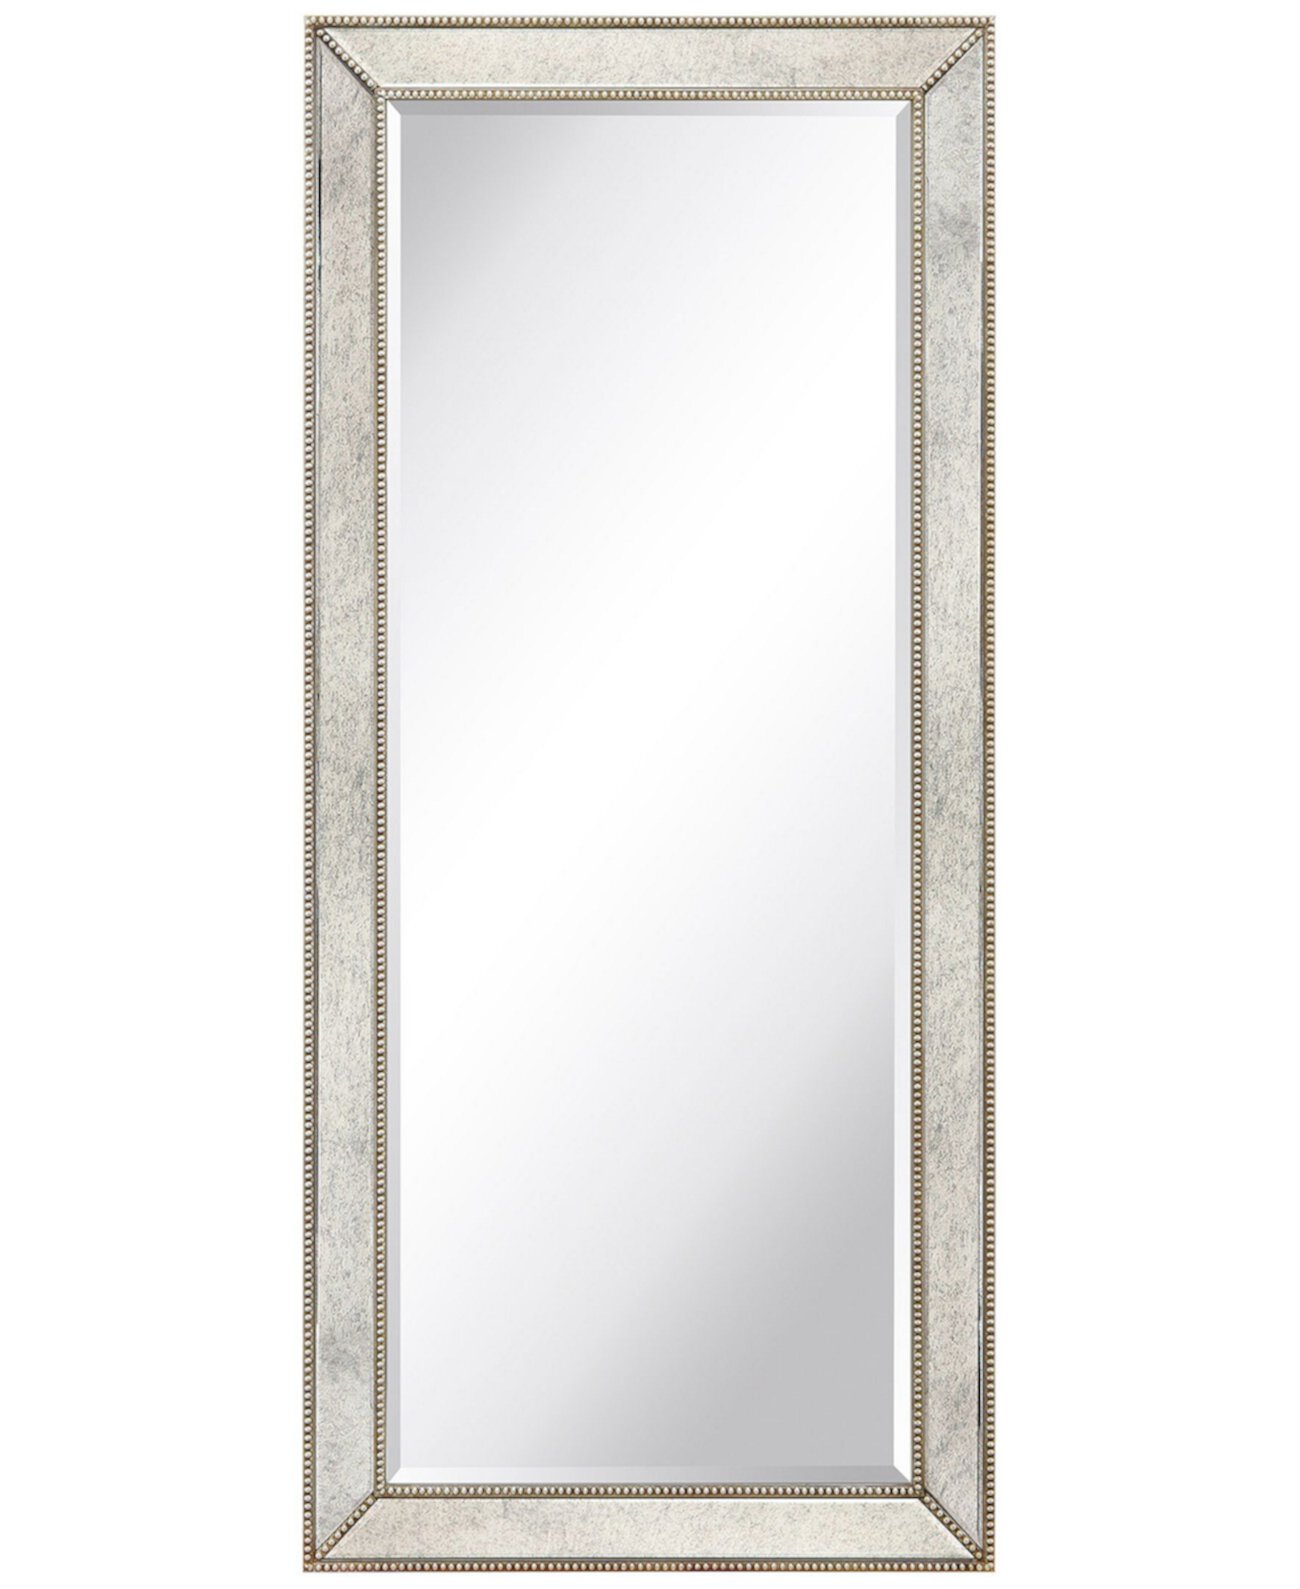 Рама из цельного дерева, покрытая антикварными зеркальными панелями со скошенной кромкой - 24 x 54 дюйма Empire Art Direct